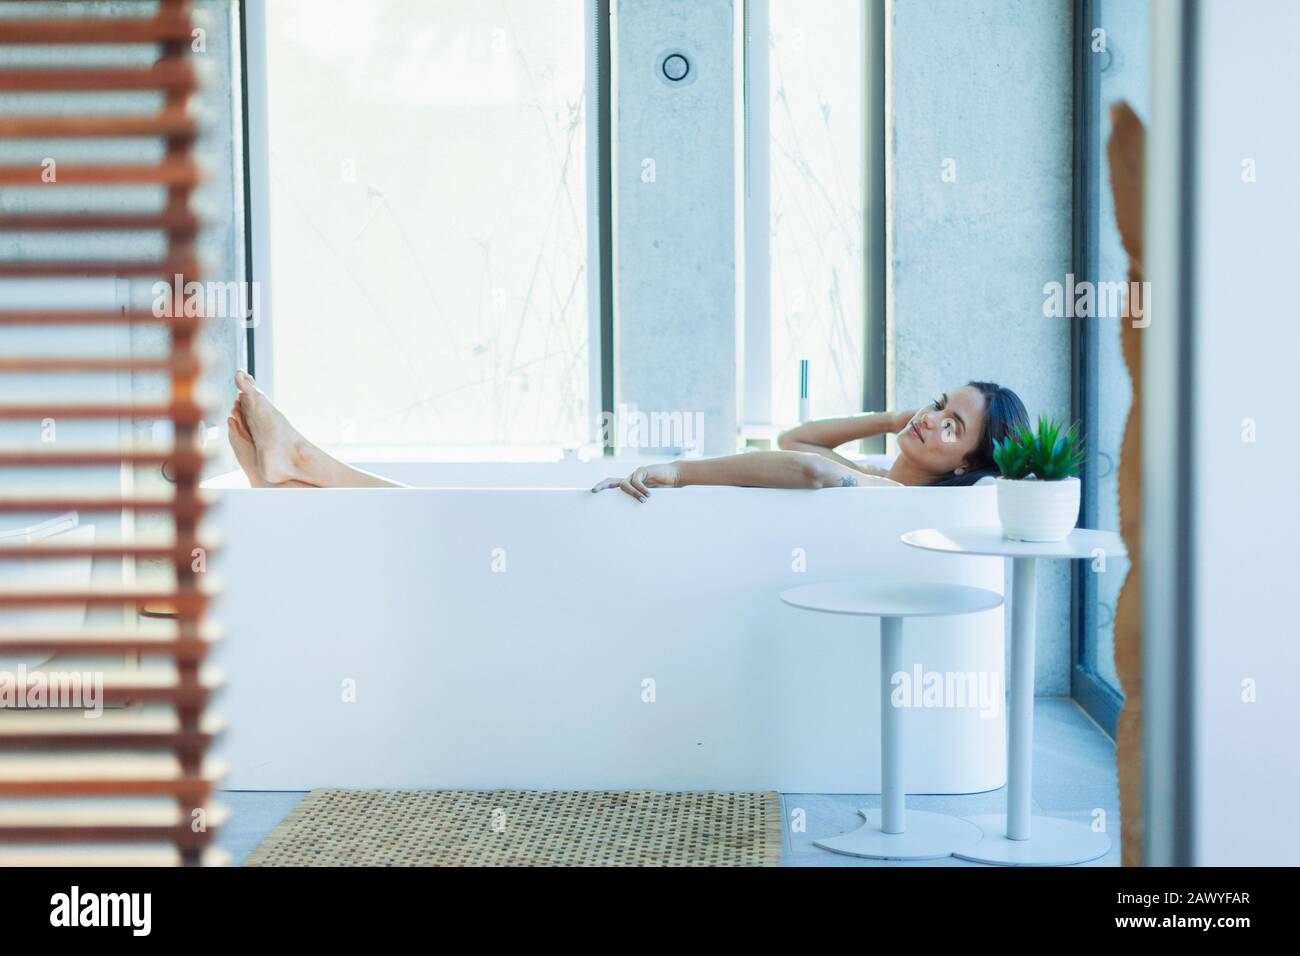 Une femme sereine se détendant dans une baignoire moderne Banque D'Images